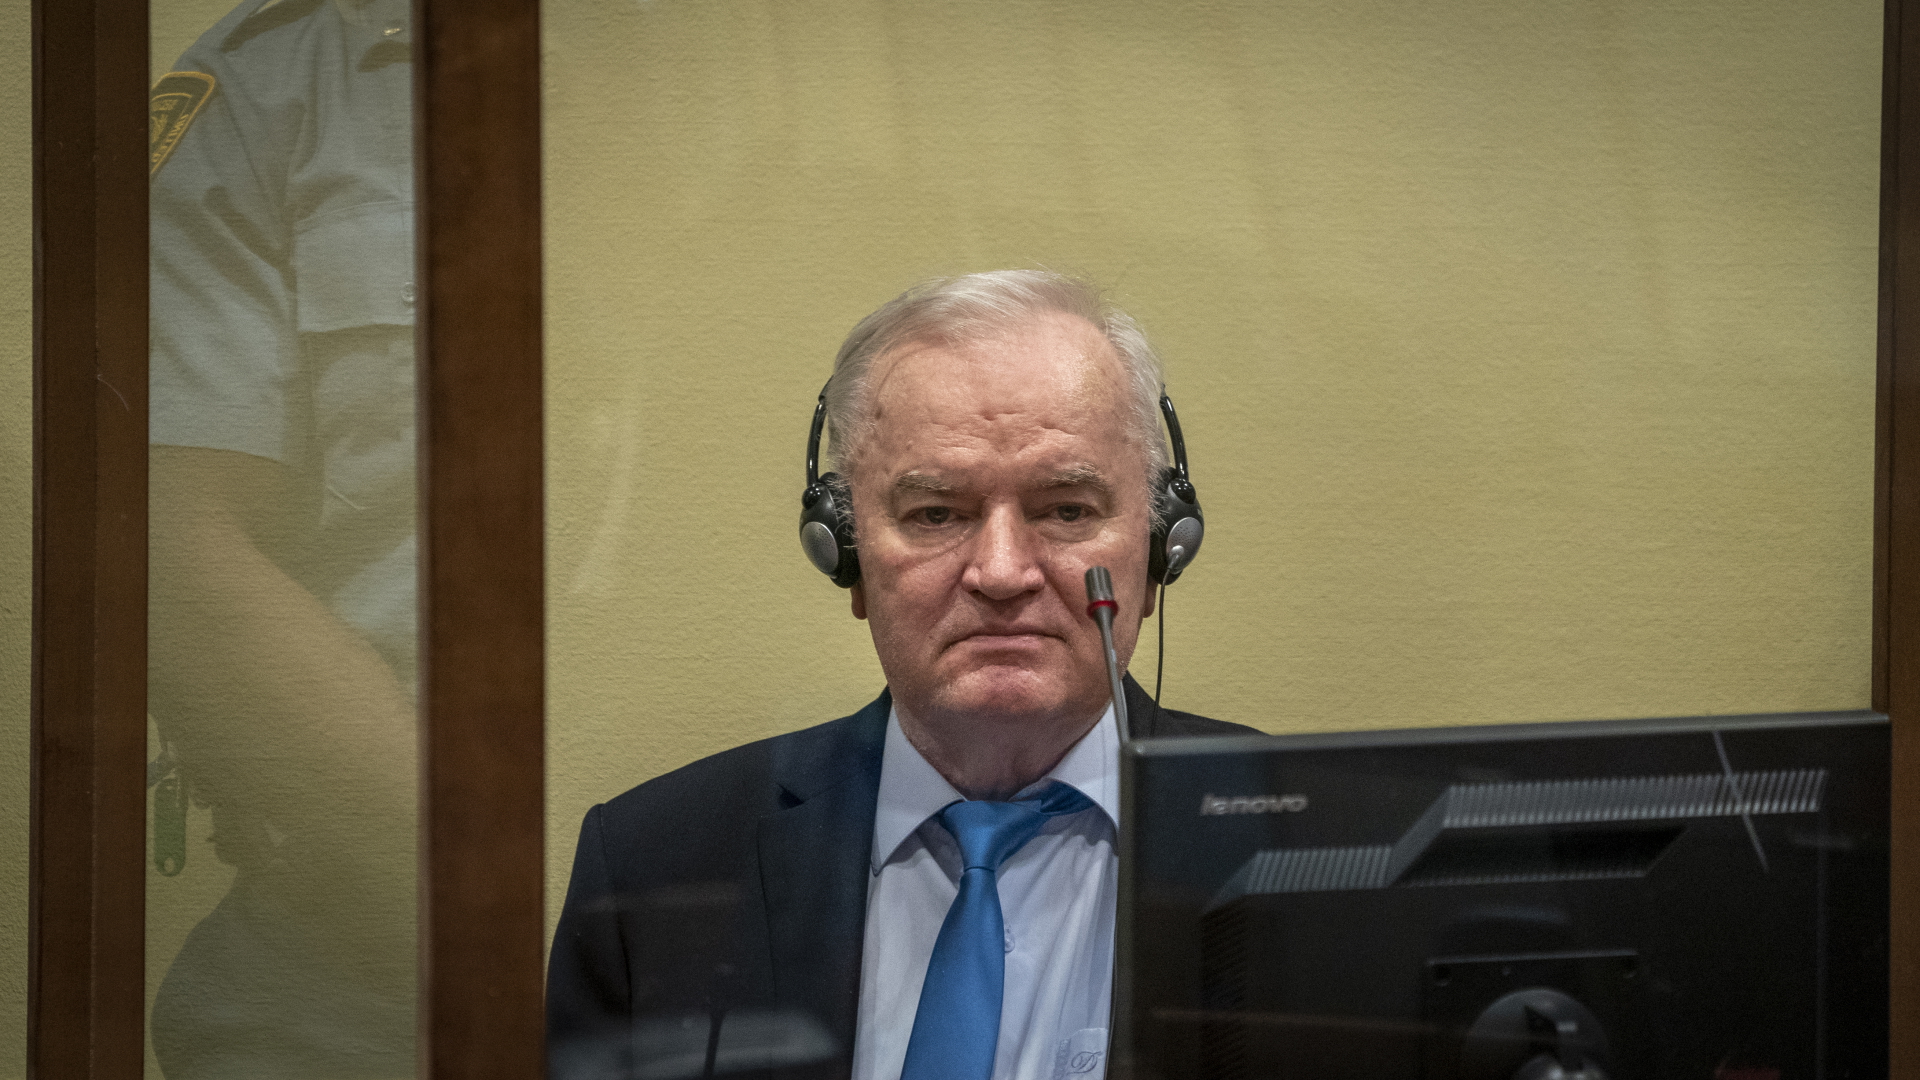 Ratko Mladic sitzt hinter einer Glasscheibe im Gerichtssaal.  | dpa